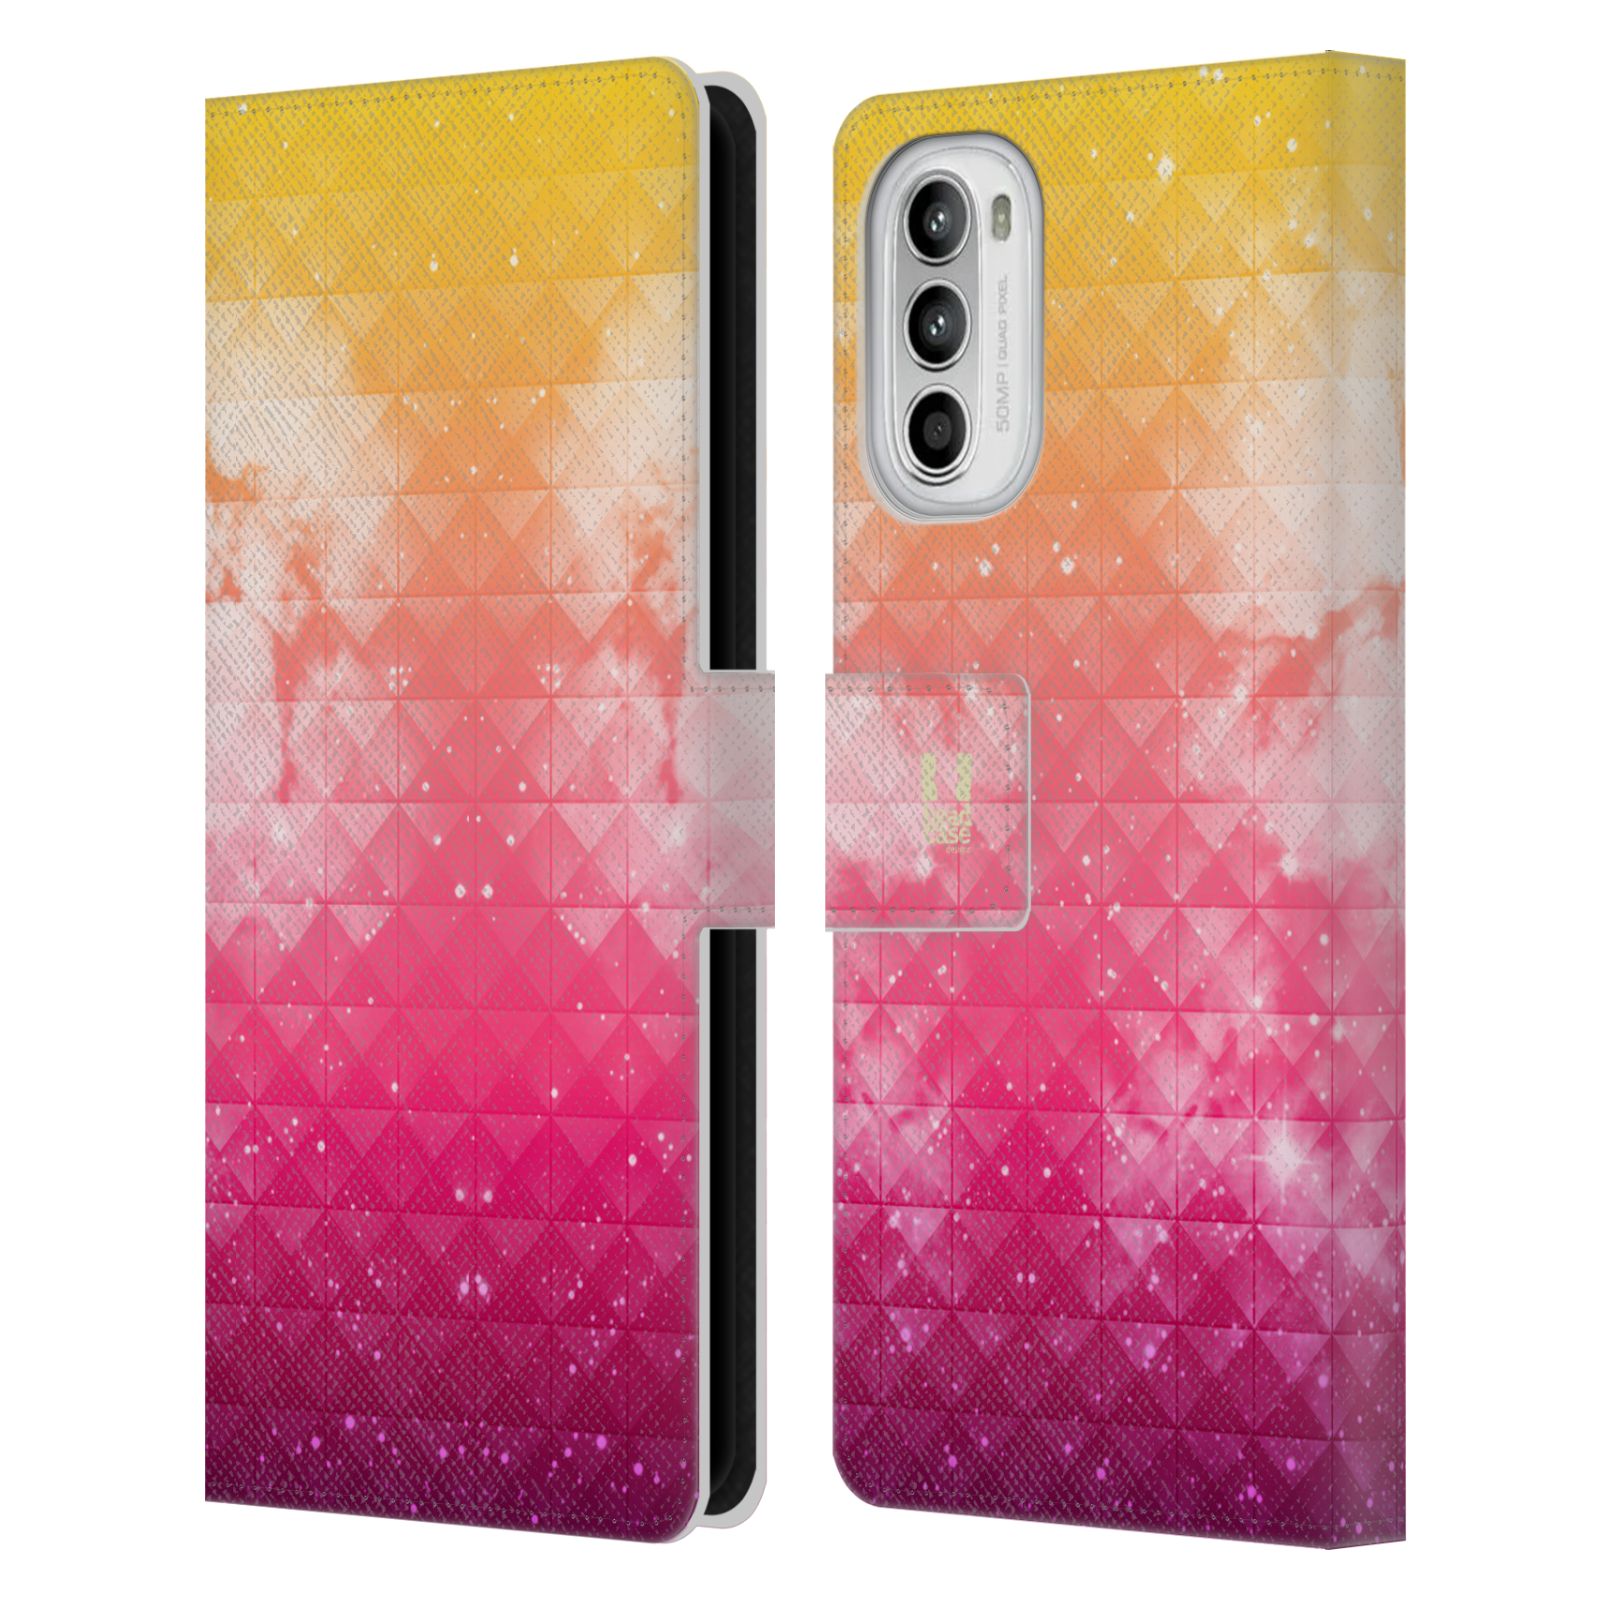 Pouzdro HEAD CASE na mobil Motorola Moto G52 barevná vesmírná mlhovina oranžová a růžová